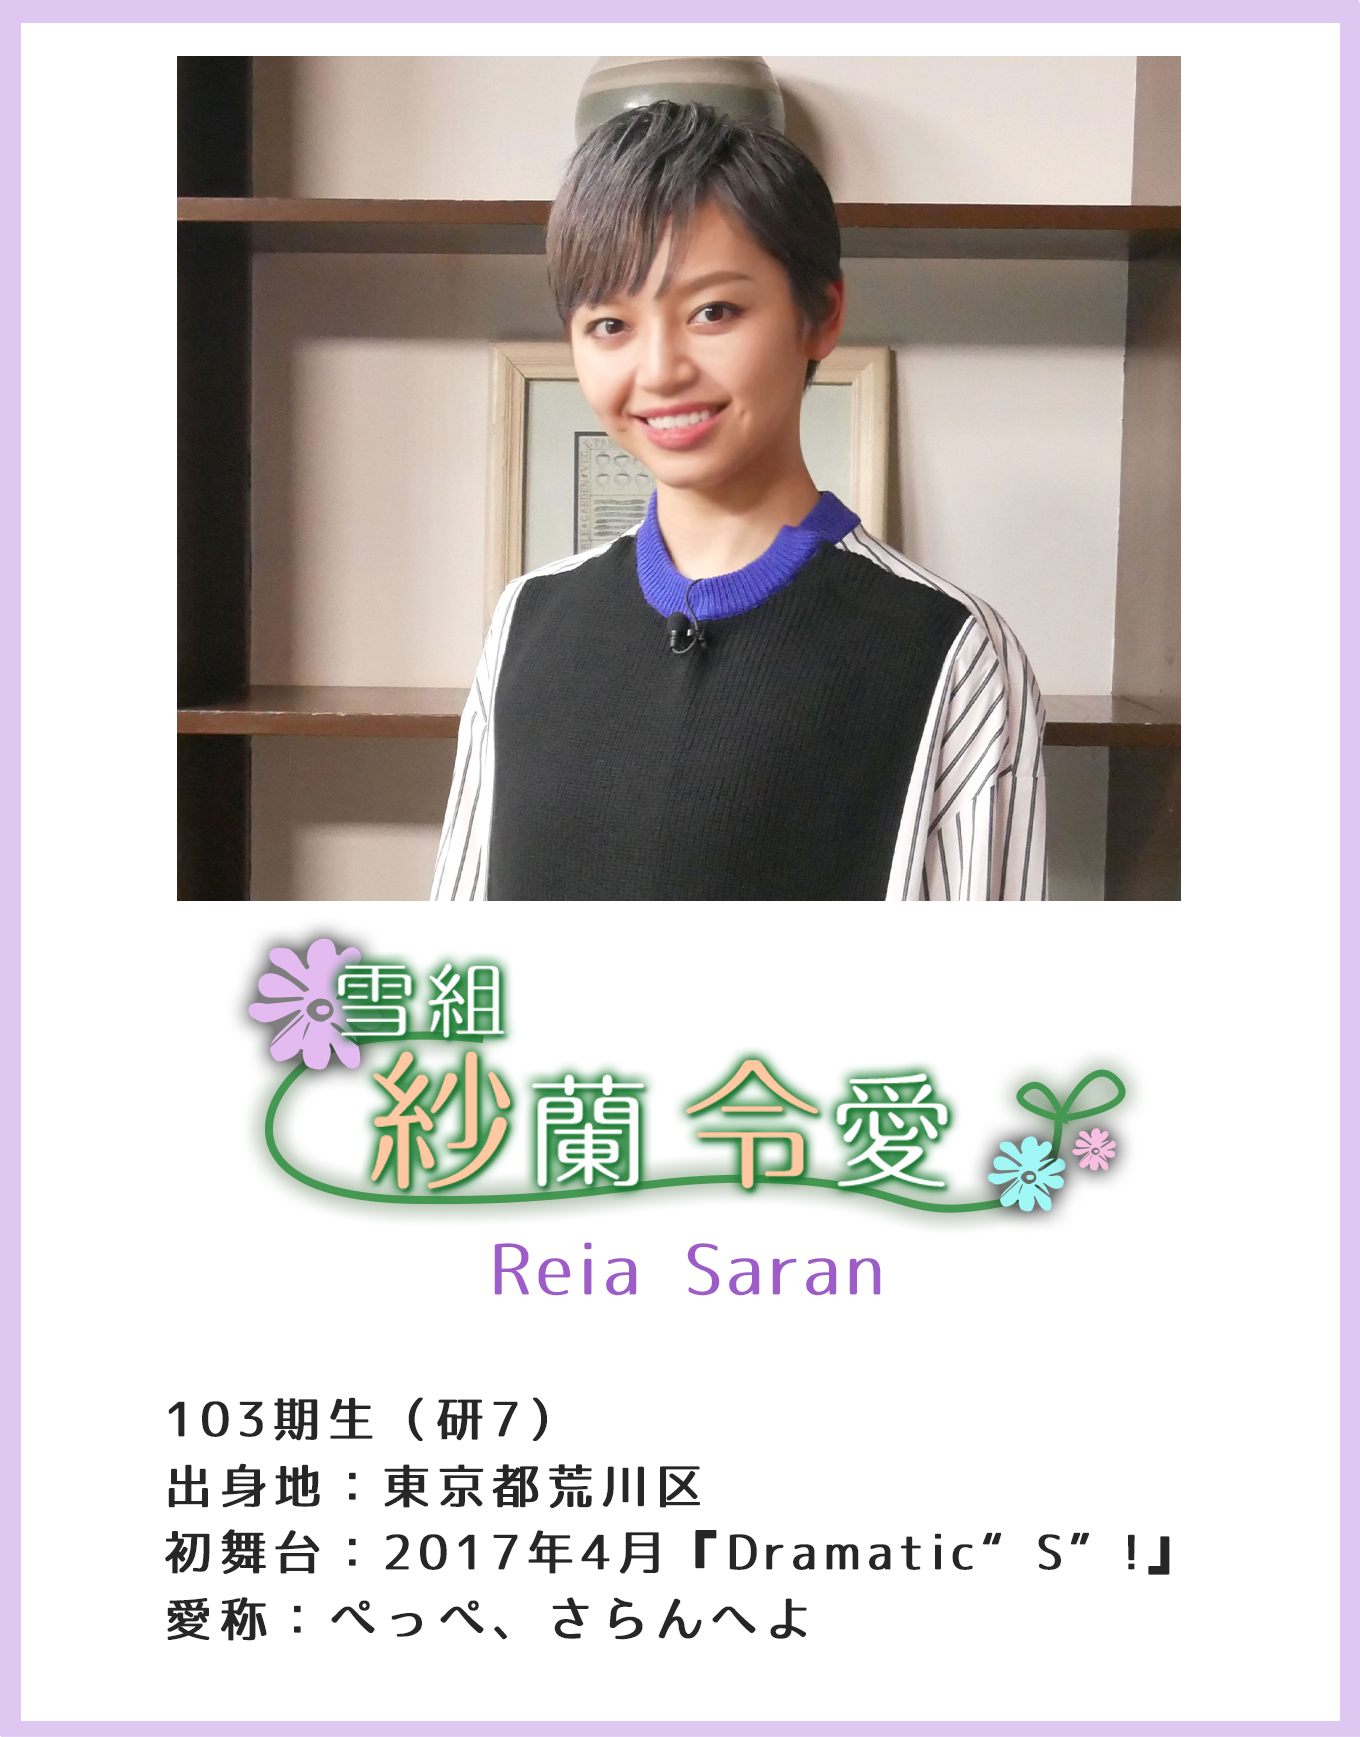 紗蘭令愛 Reia Saran 103期生（研7）出身地：東京都荒川区 初舞台：2017年4月『Dramatic“S”!』 愛称：ぺっぺ、さらんへよ